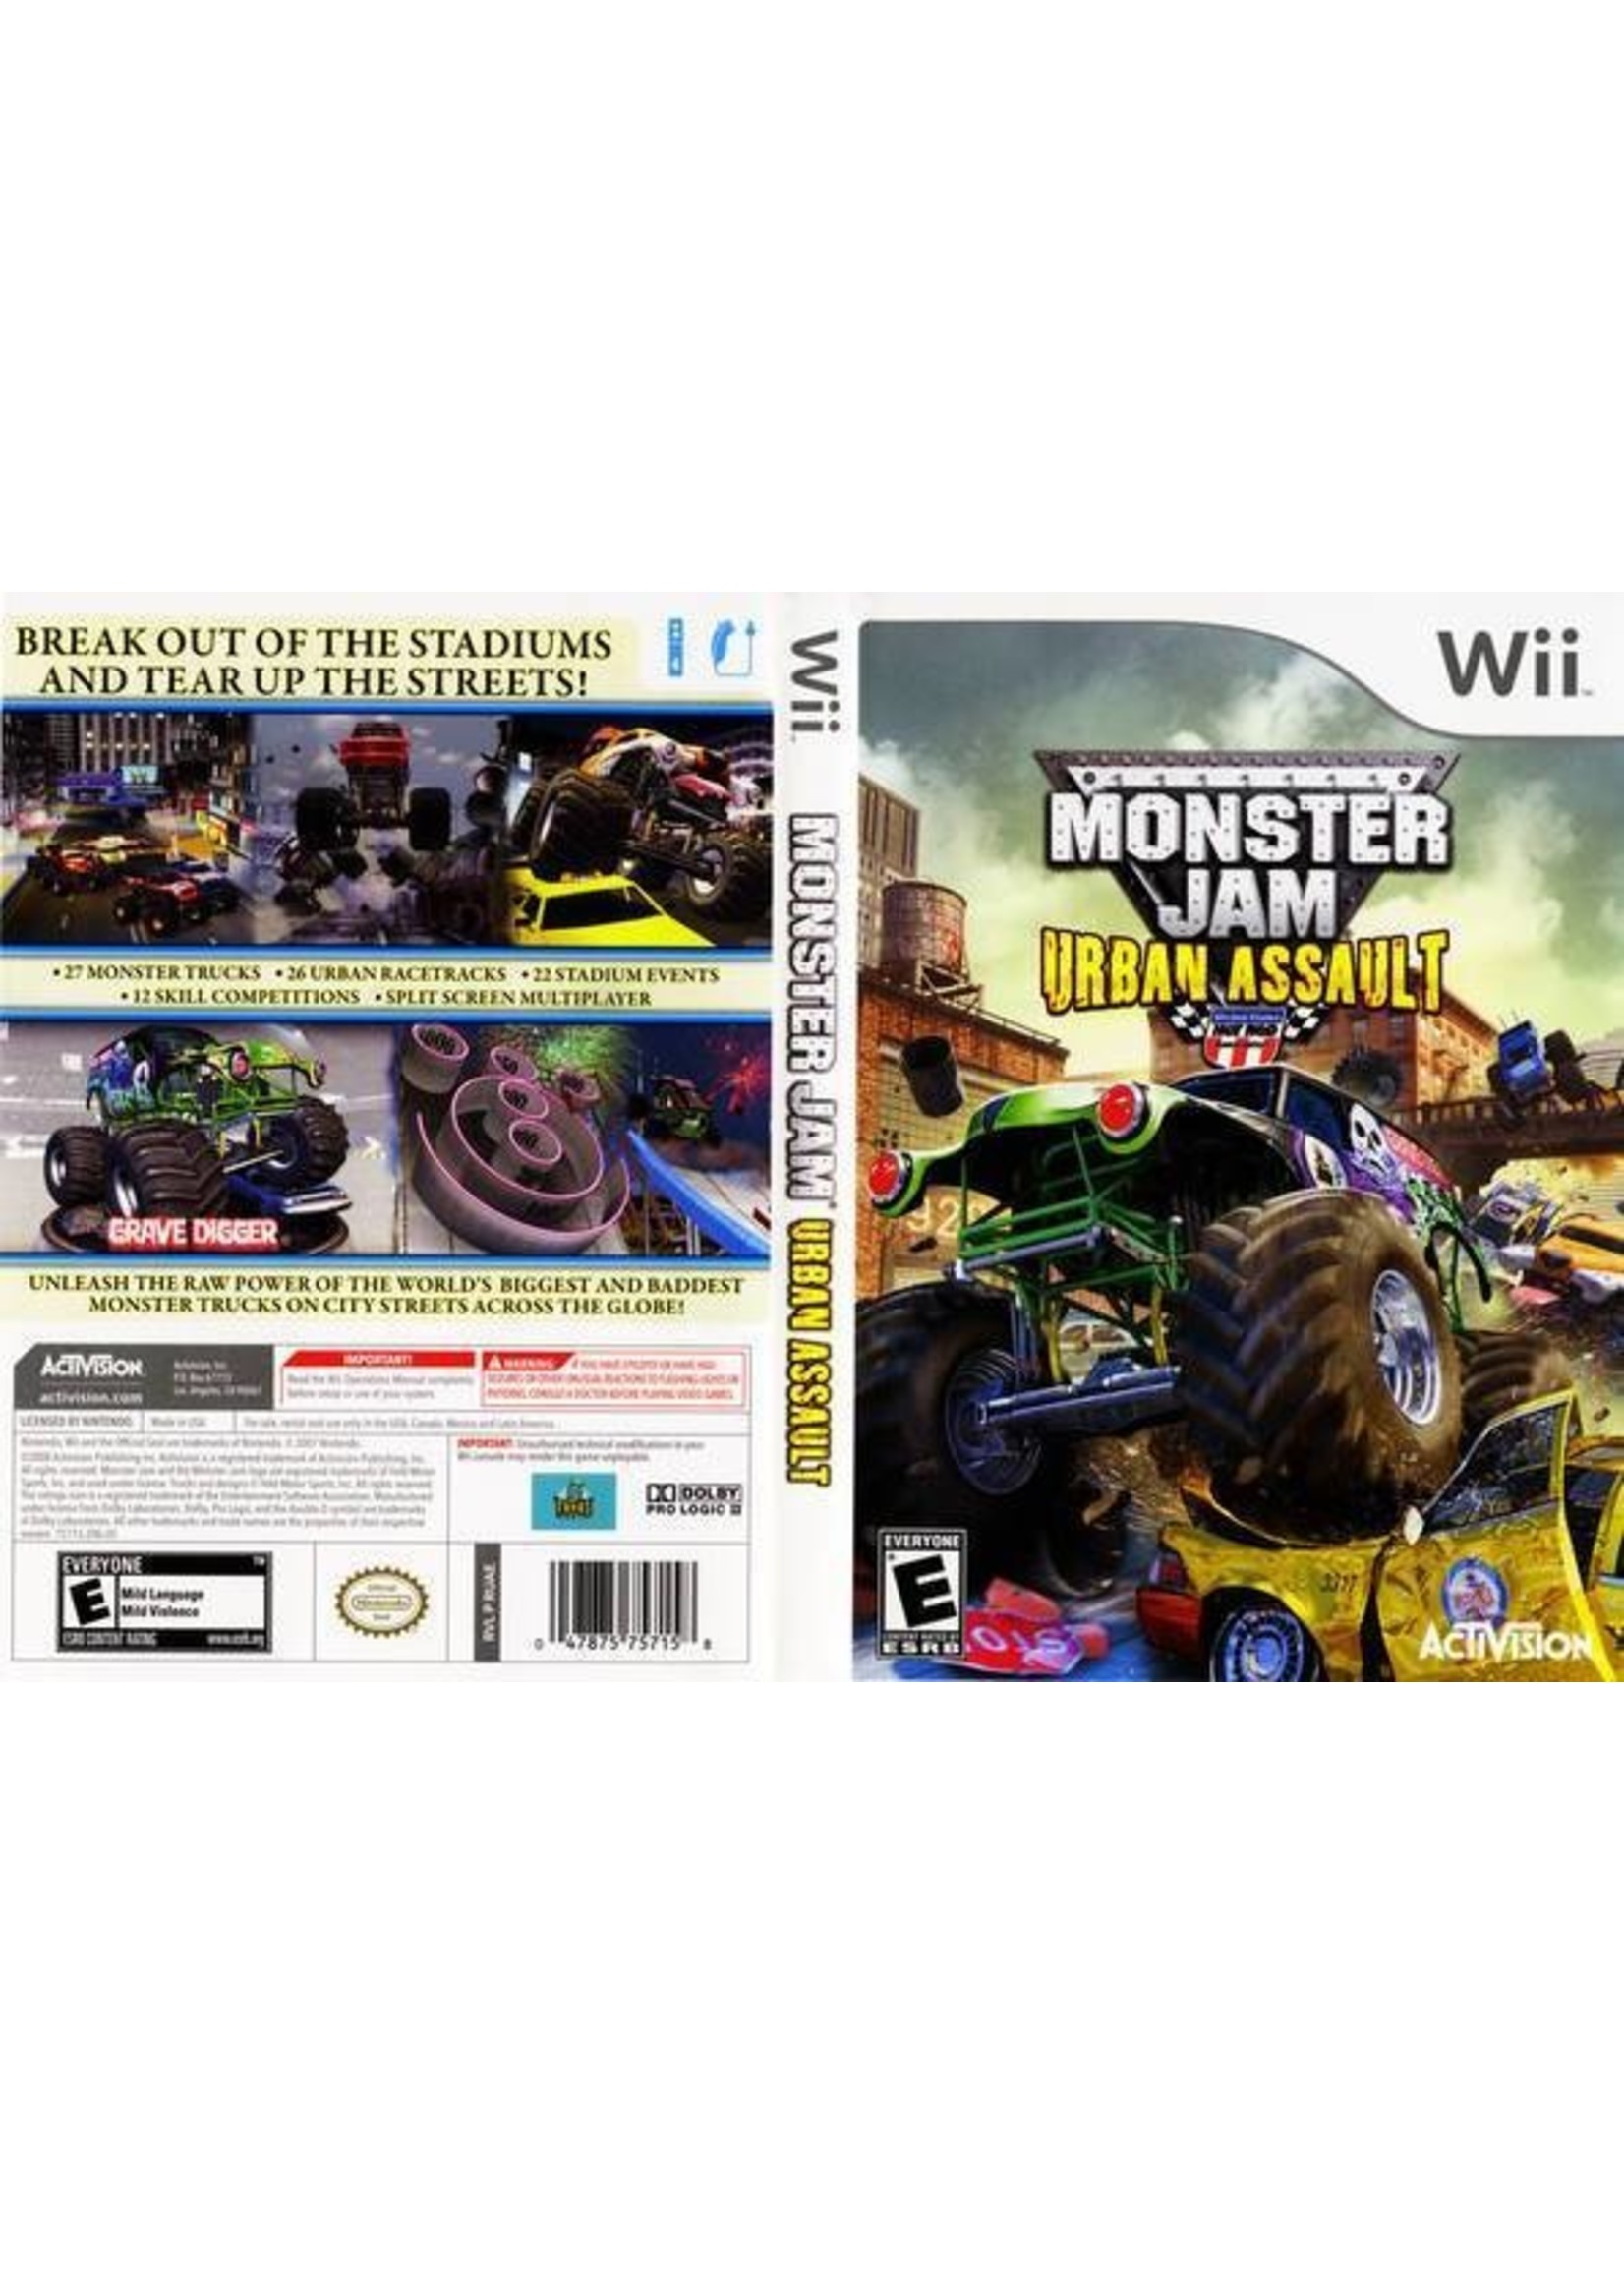 Nintendo Wii Monster Jam Urban Assault